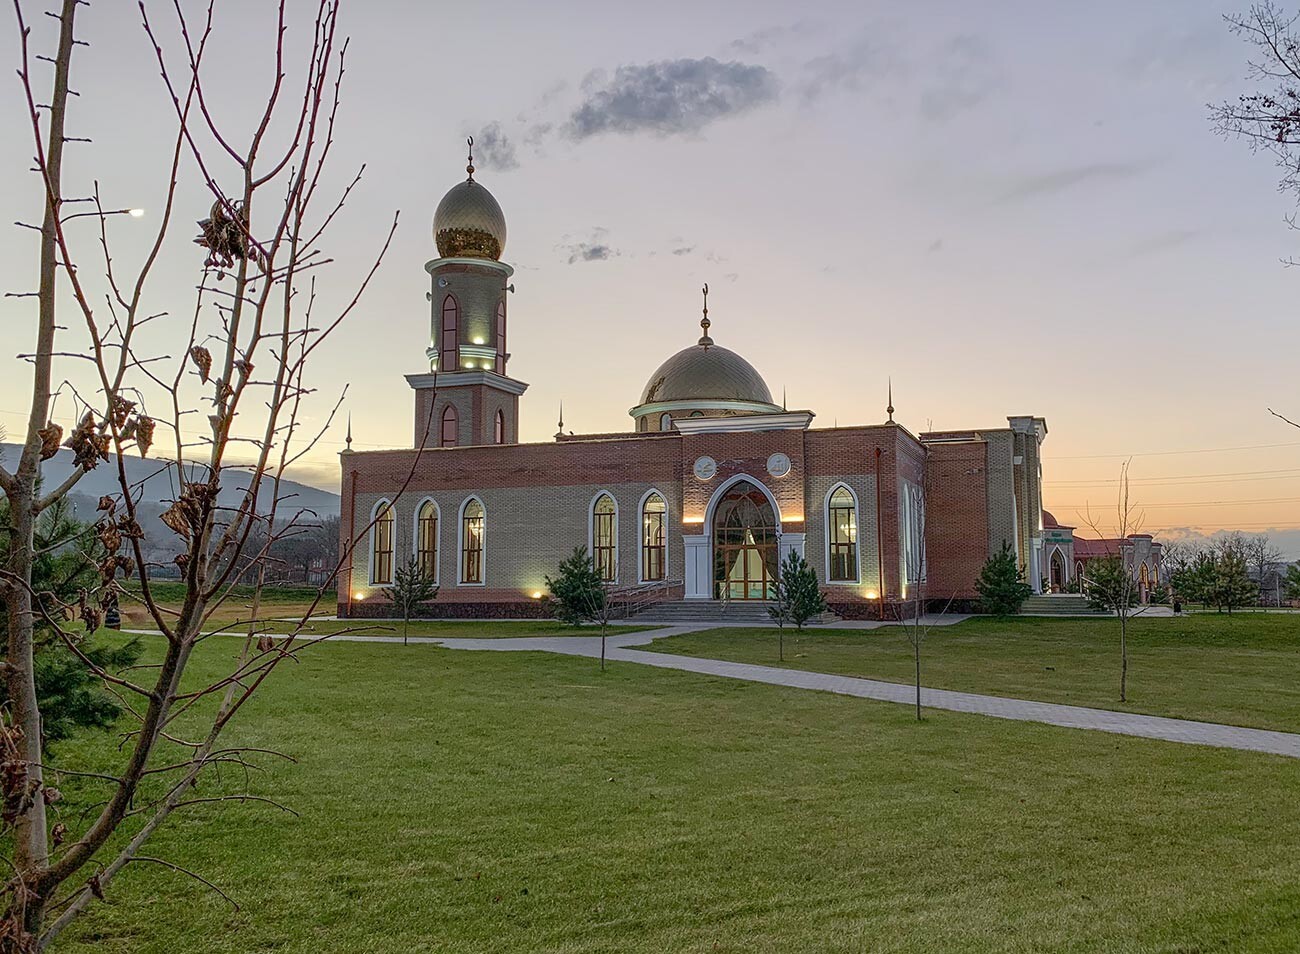 Сельские мечети в Чечне архитектурно часто похожи на церкви